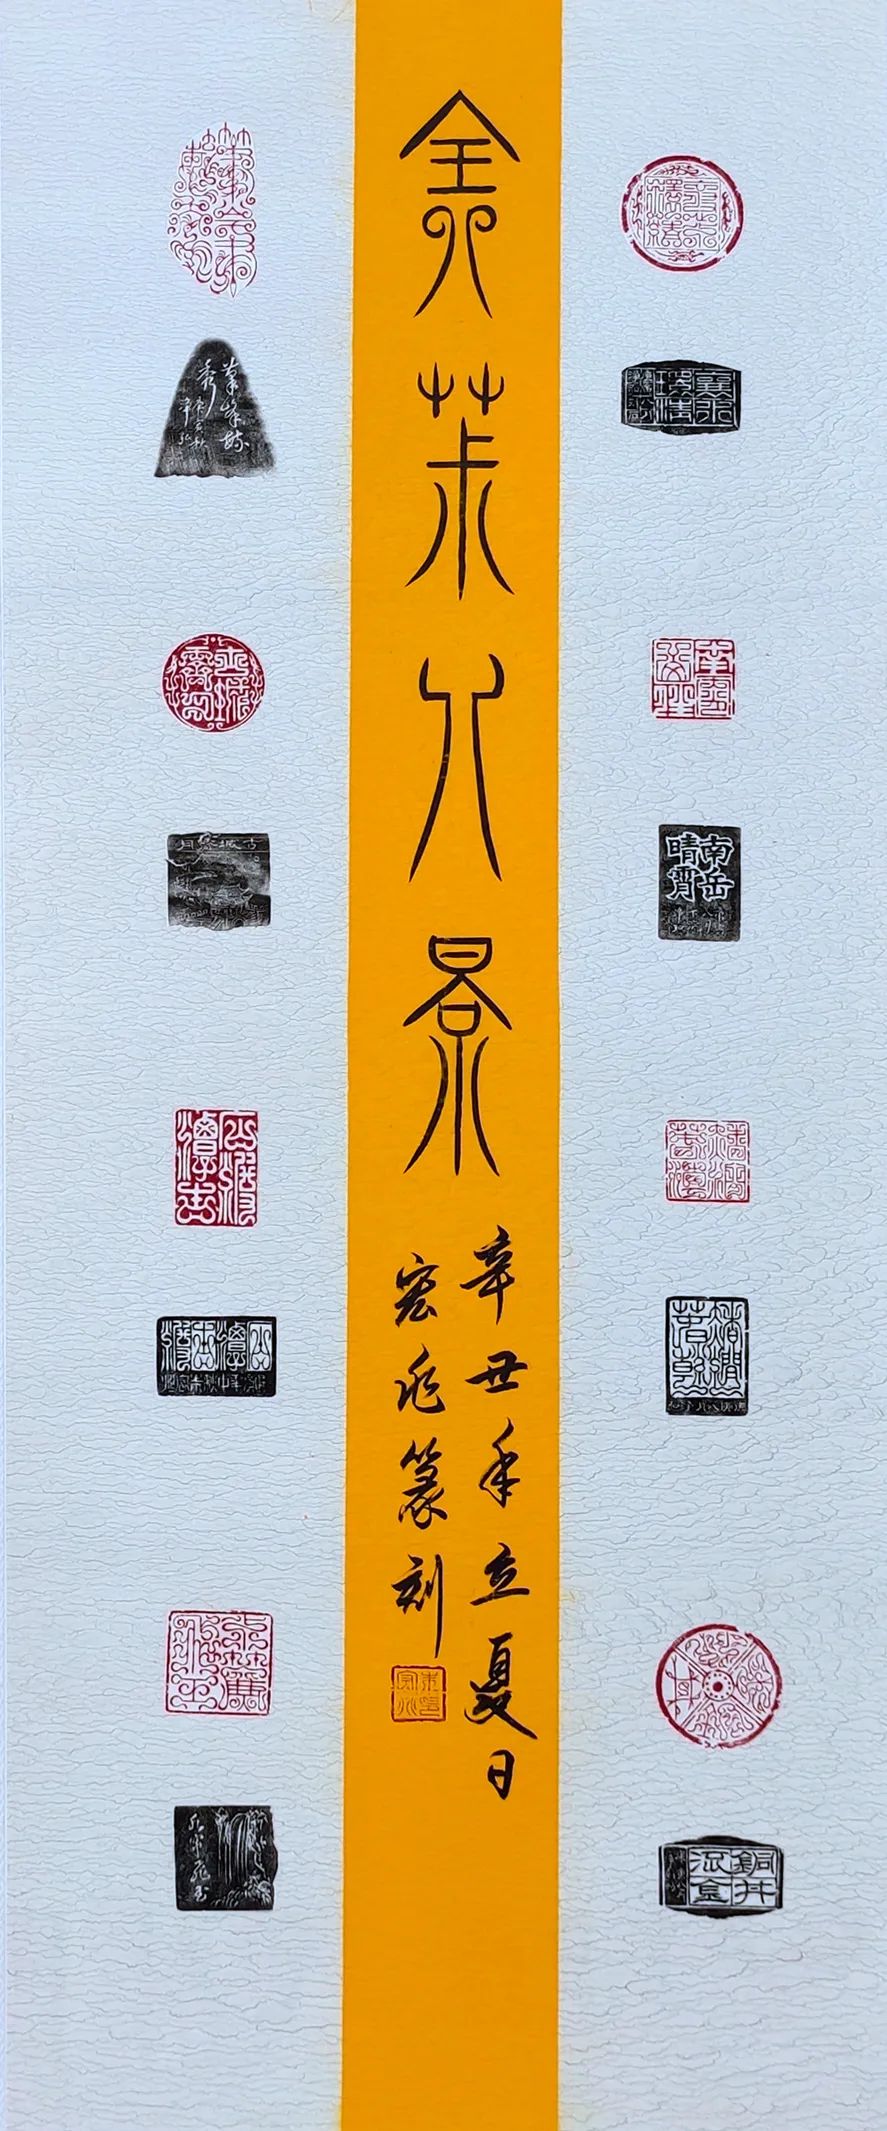 全椒县地名文化书画展在笔峰塔文艺创作交流中心展出（附全部展览作品）